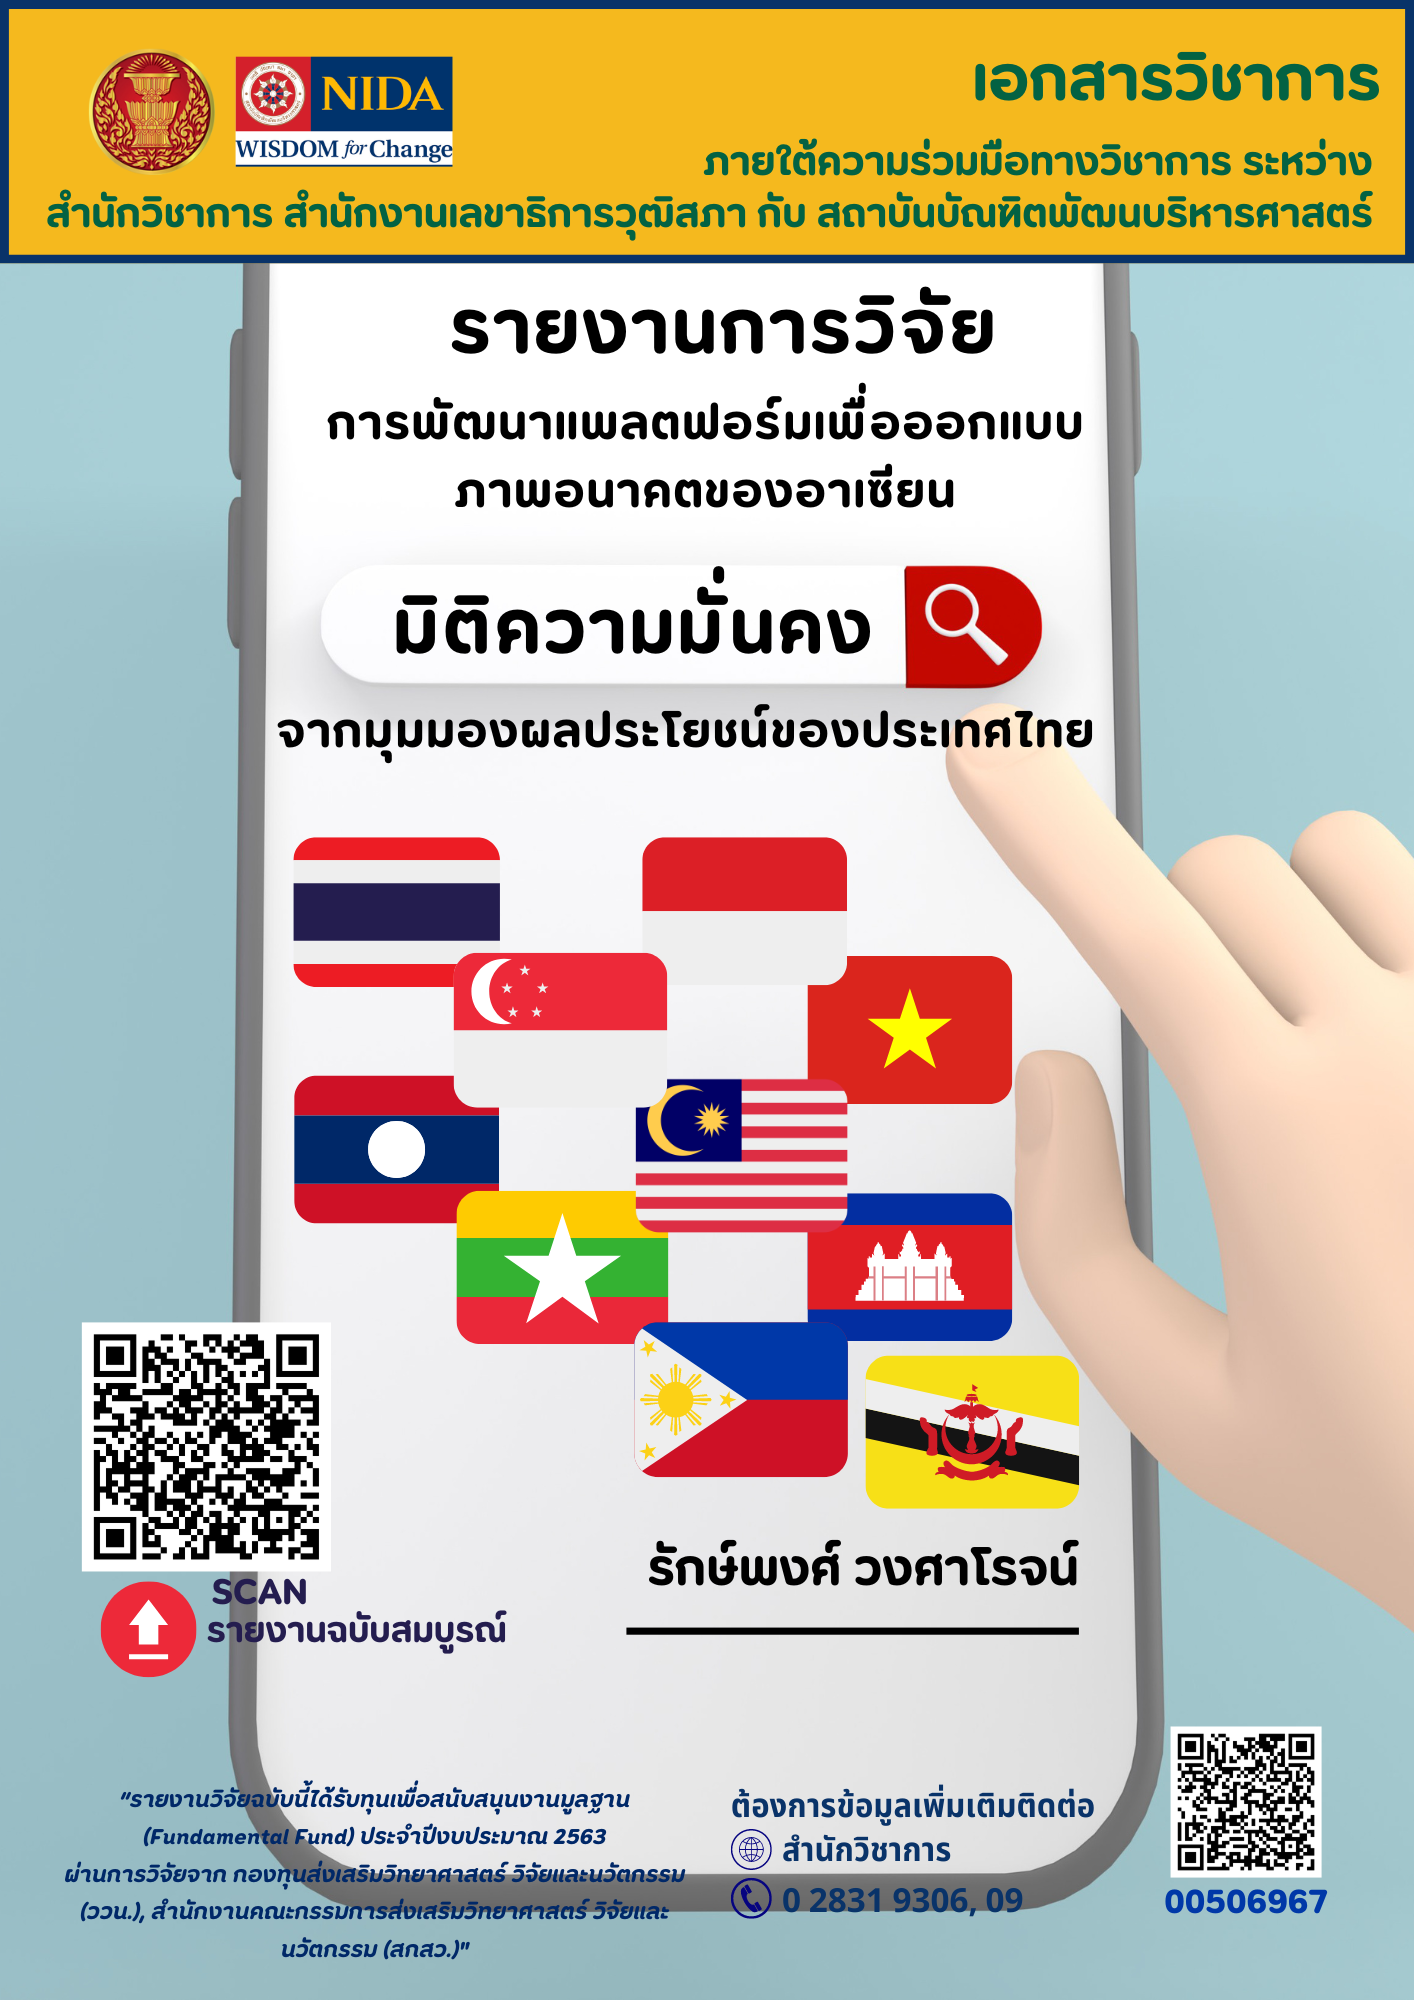 การพัฒนาแพลตฟอร์มเพื่อออกแบบภาพอนาคตของอาเซียน มิติความมั่นคงจากมุมมองผลประโยชน์ของประเทศไทย